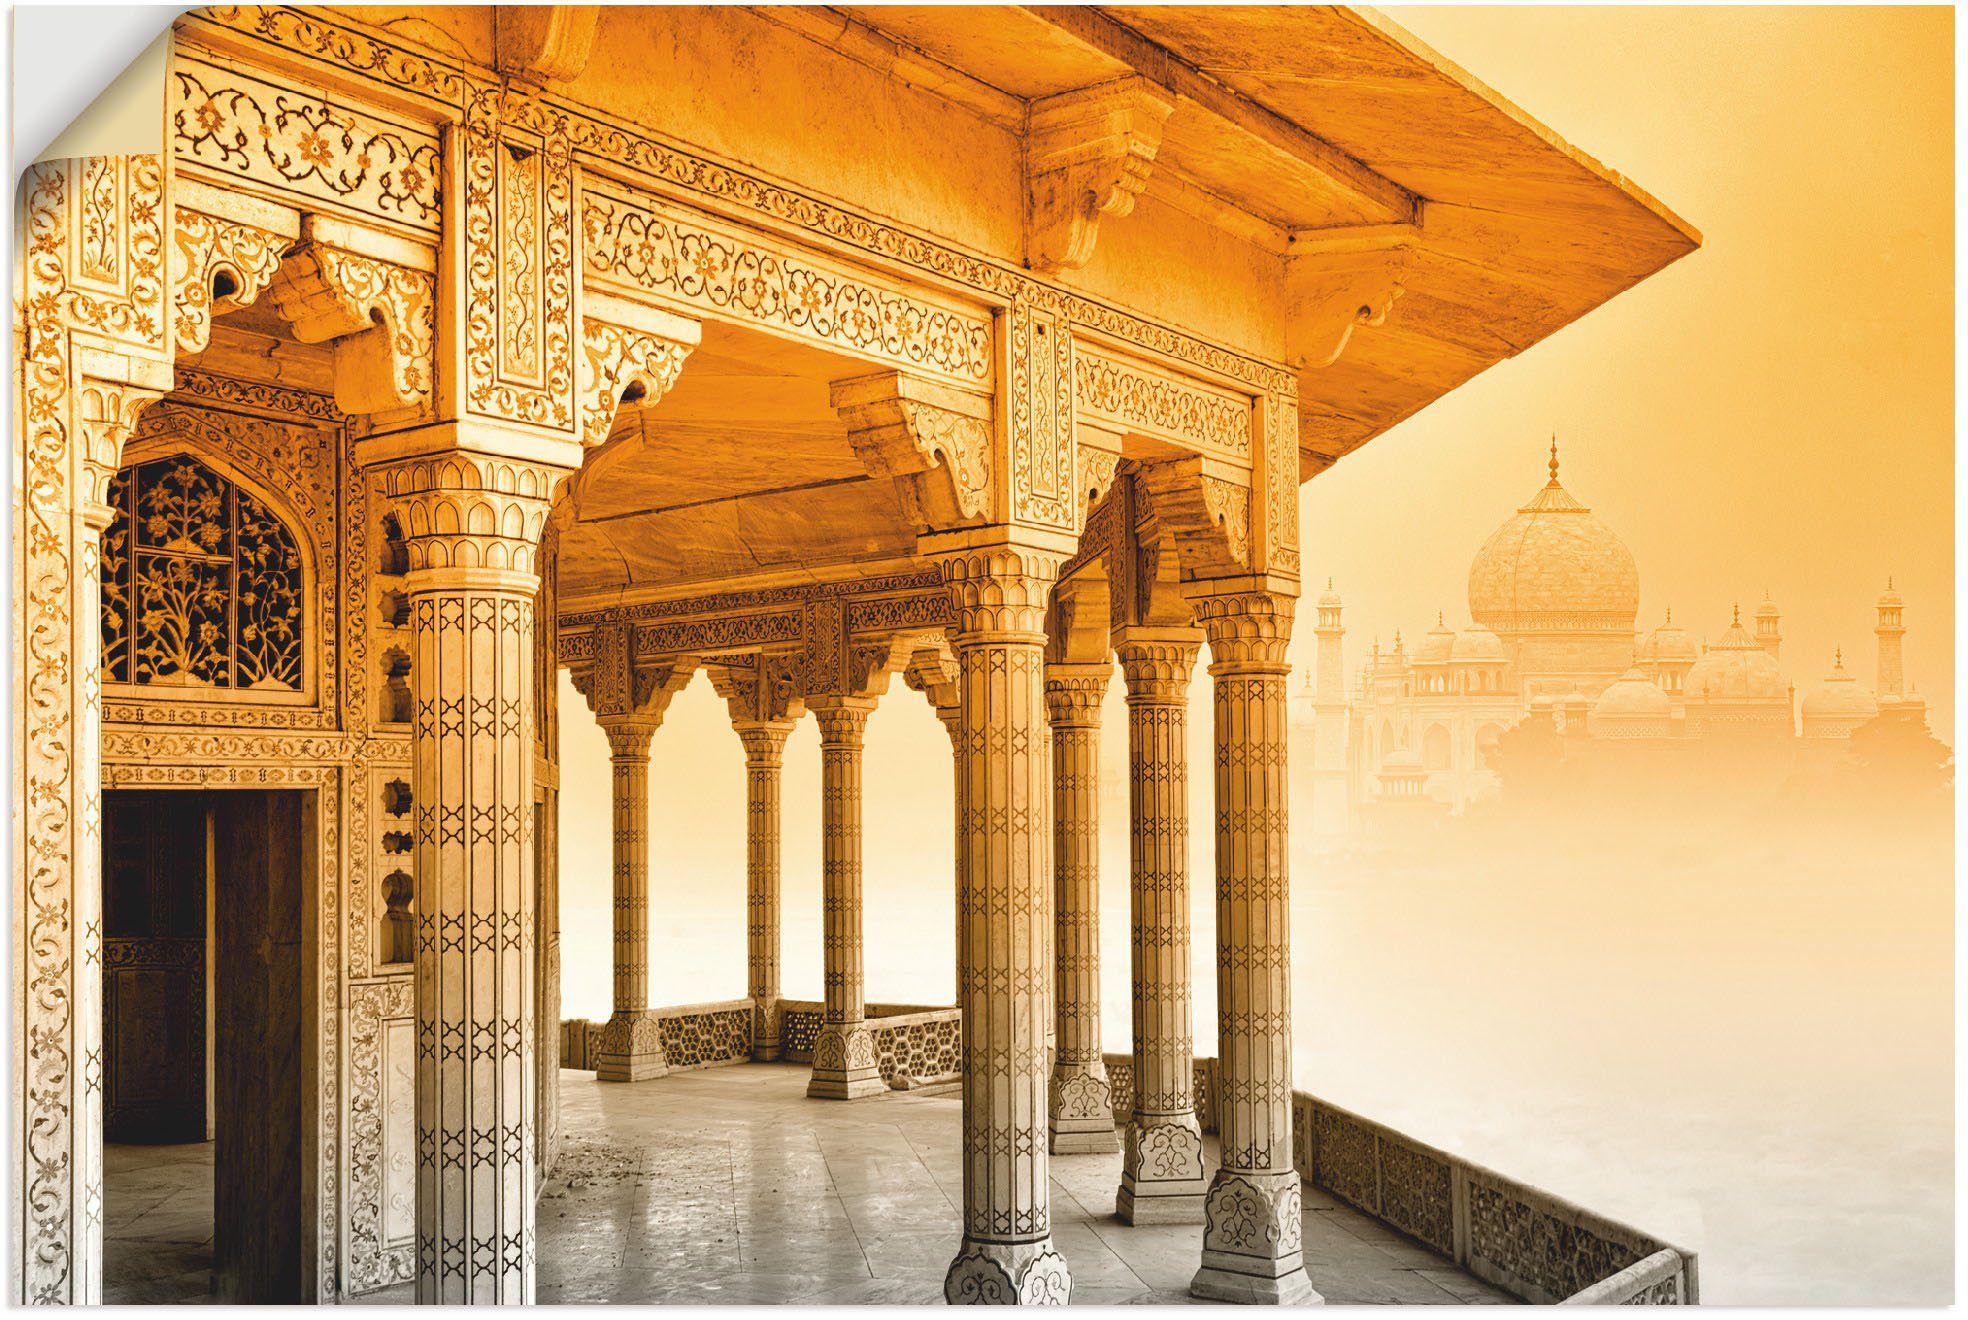 Artland Artprint Fort Agra mit Taj Mahal in vele afmetingen & productsoorten - artprint van aluminium / artprint voor buiten, artprint op linnen, poster, muursticker / wandfolie oo